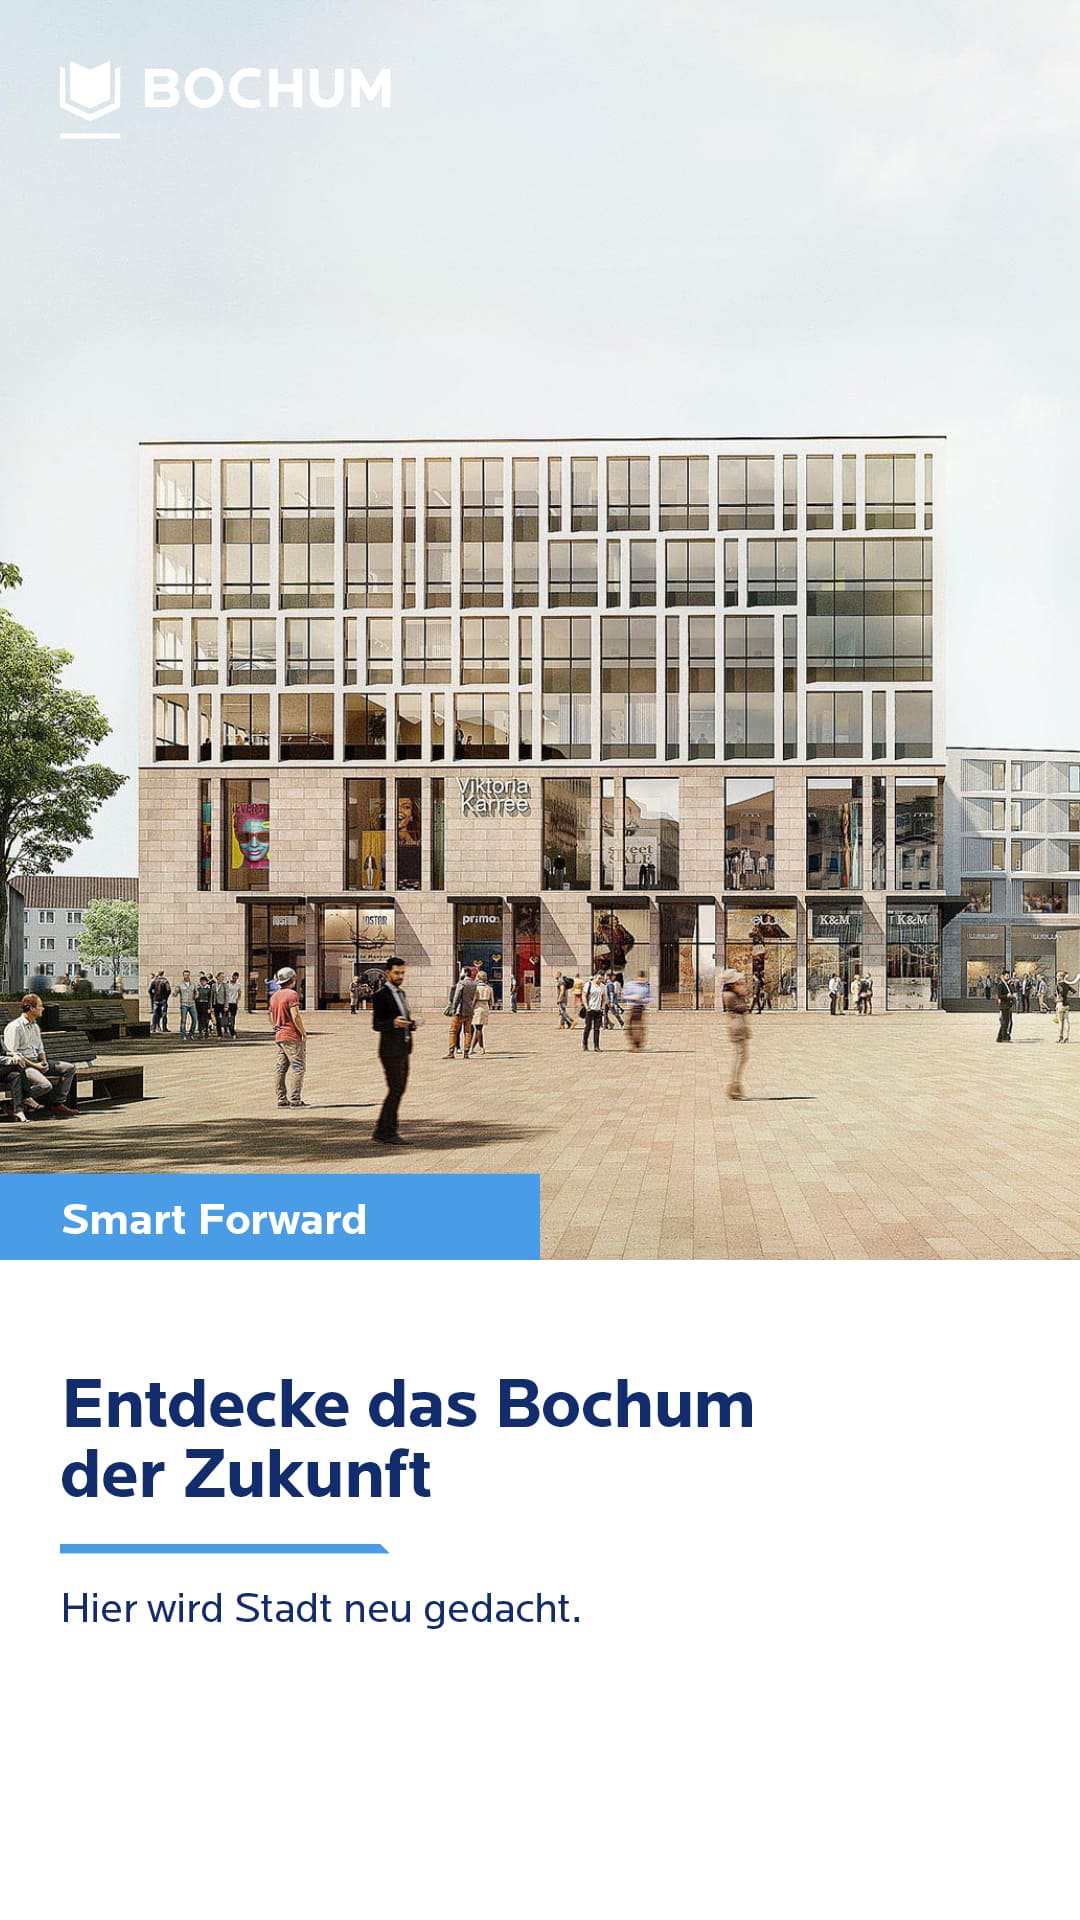 Moderne Architektur, belebter Platz in Bochum, Slogan "Entdecke das Bochum der Zukunft"